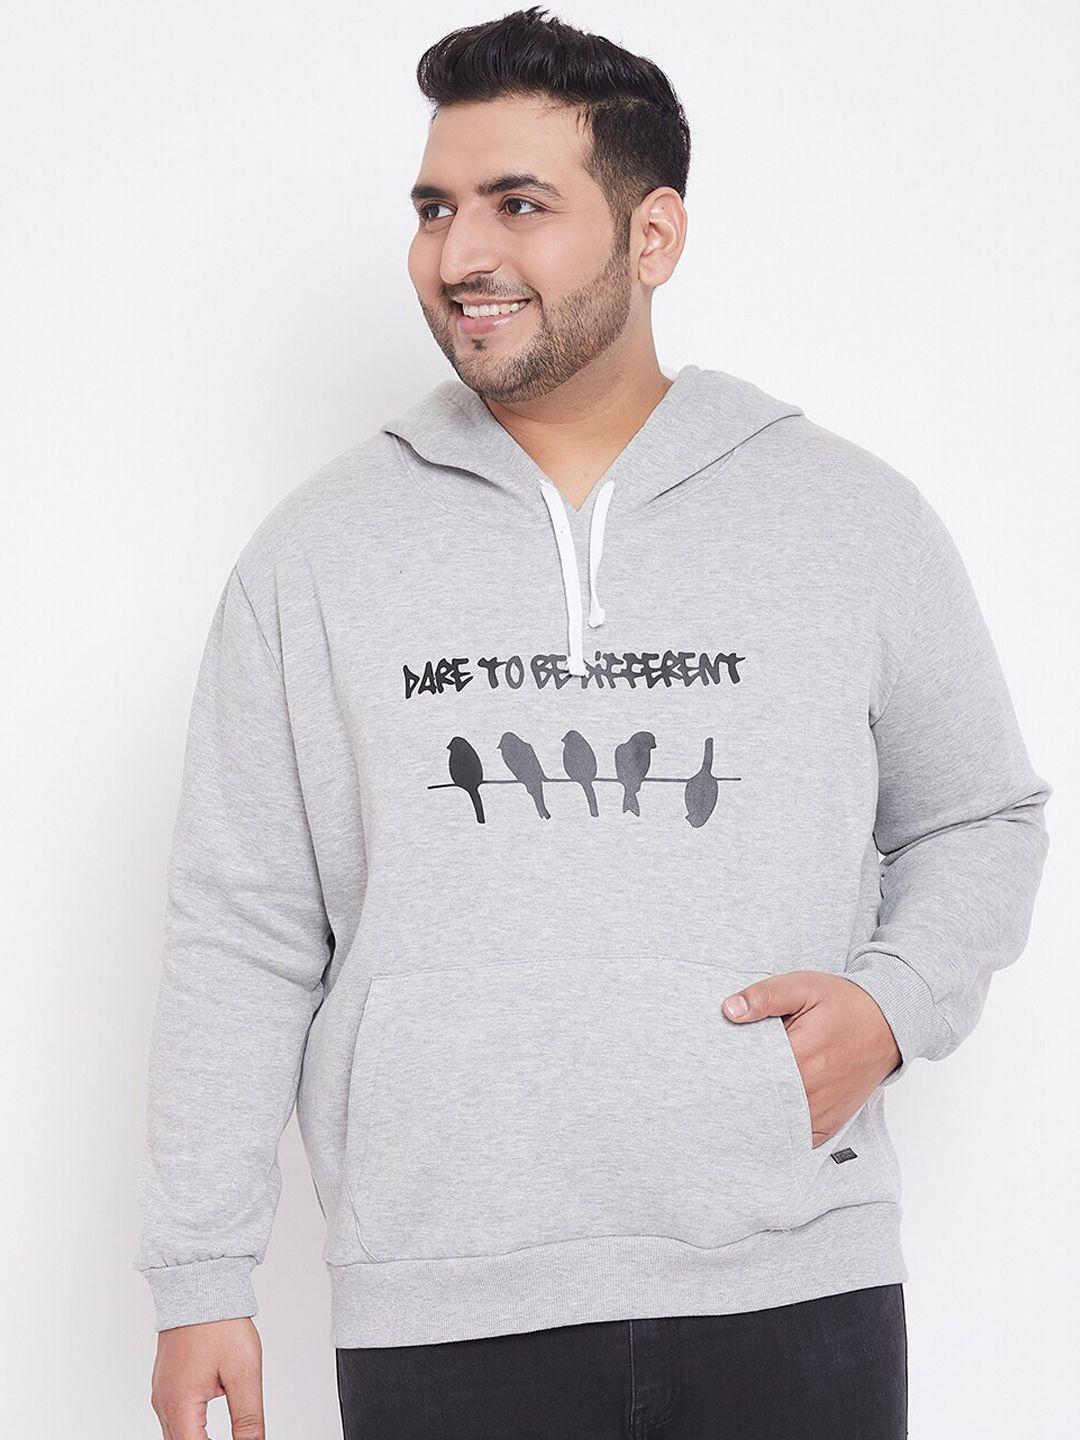 Instafab Plus Men Grey Typography Printed Hooded Sweatshirt